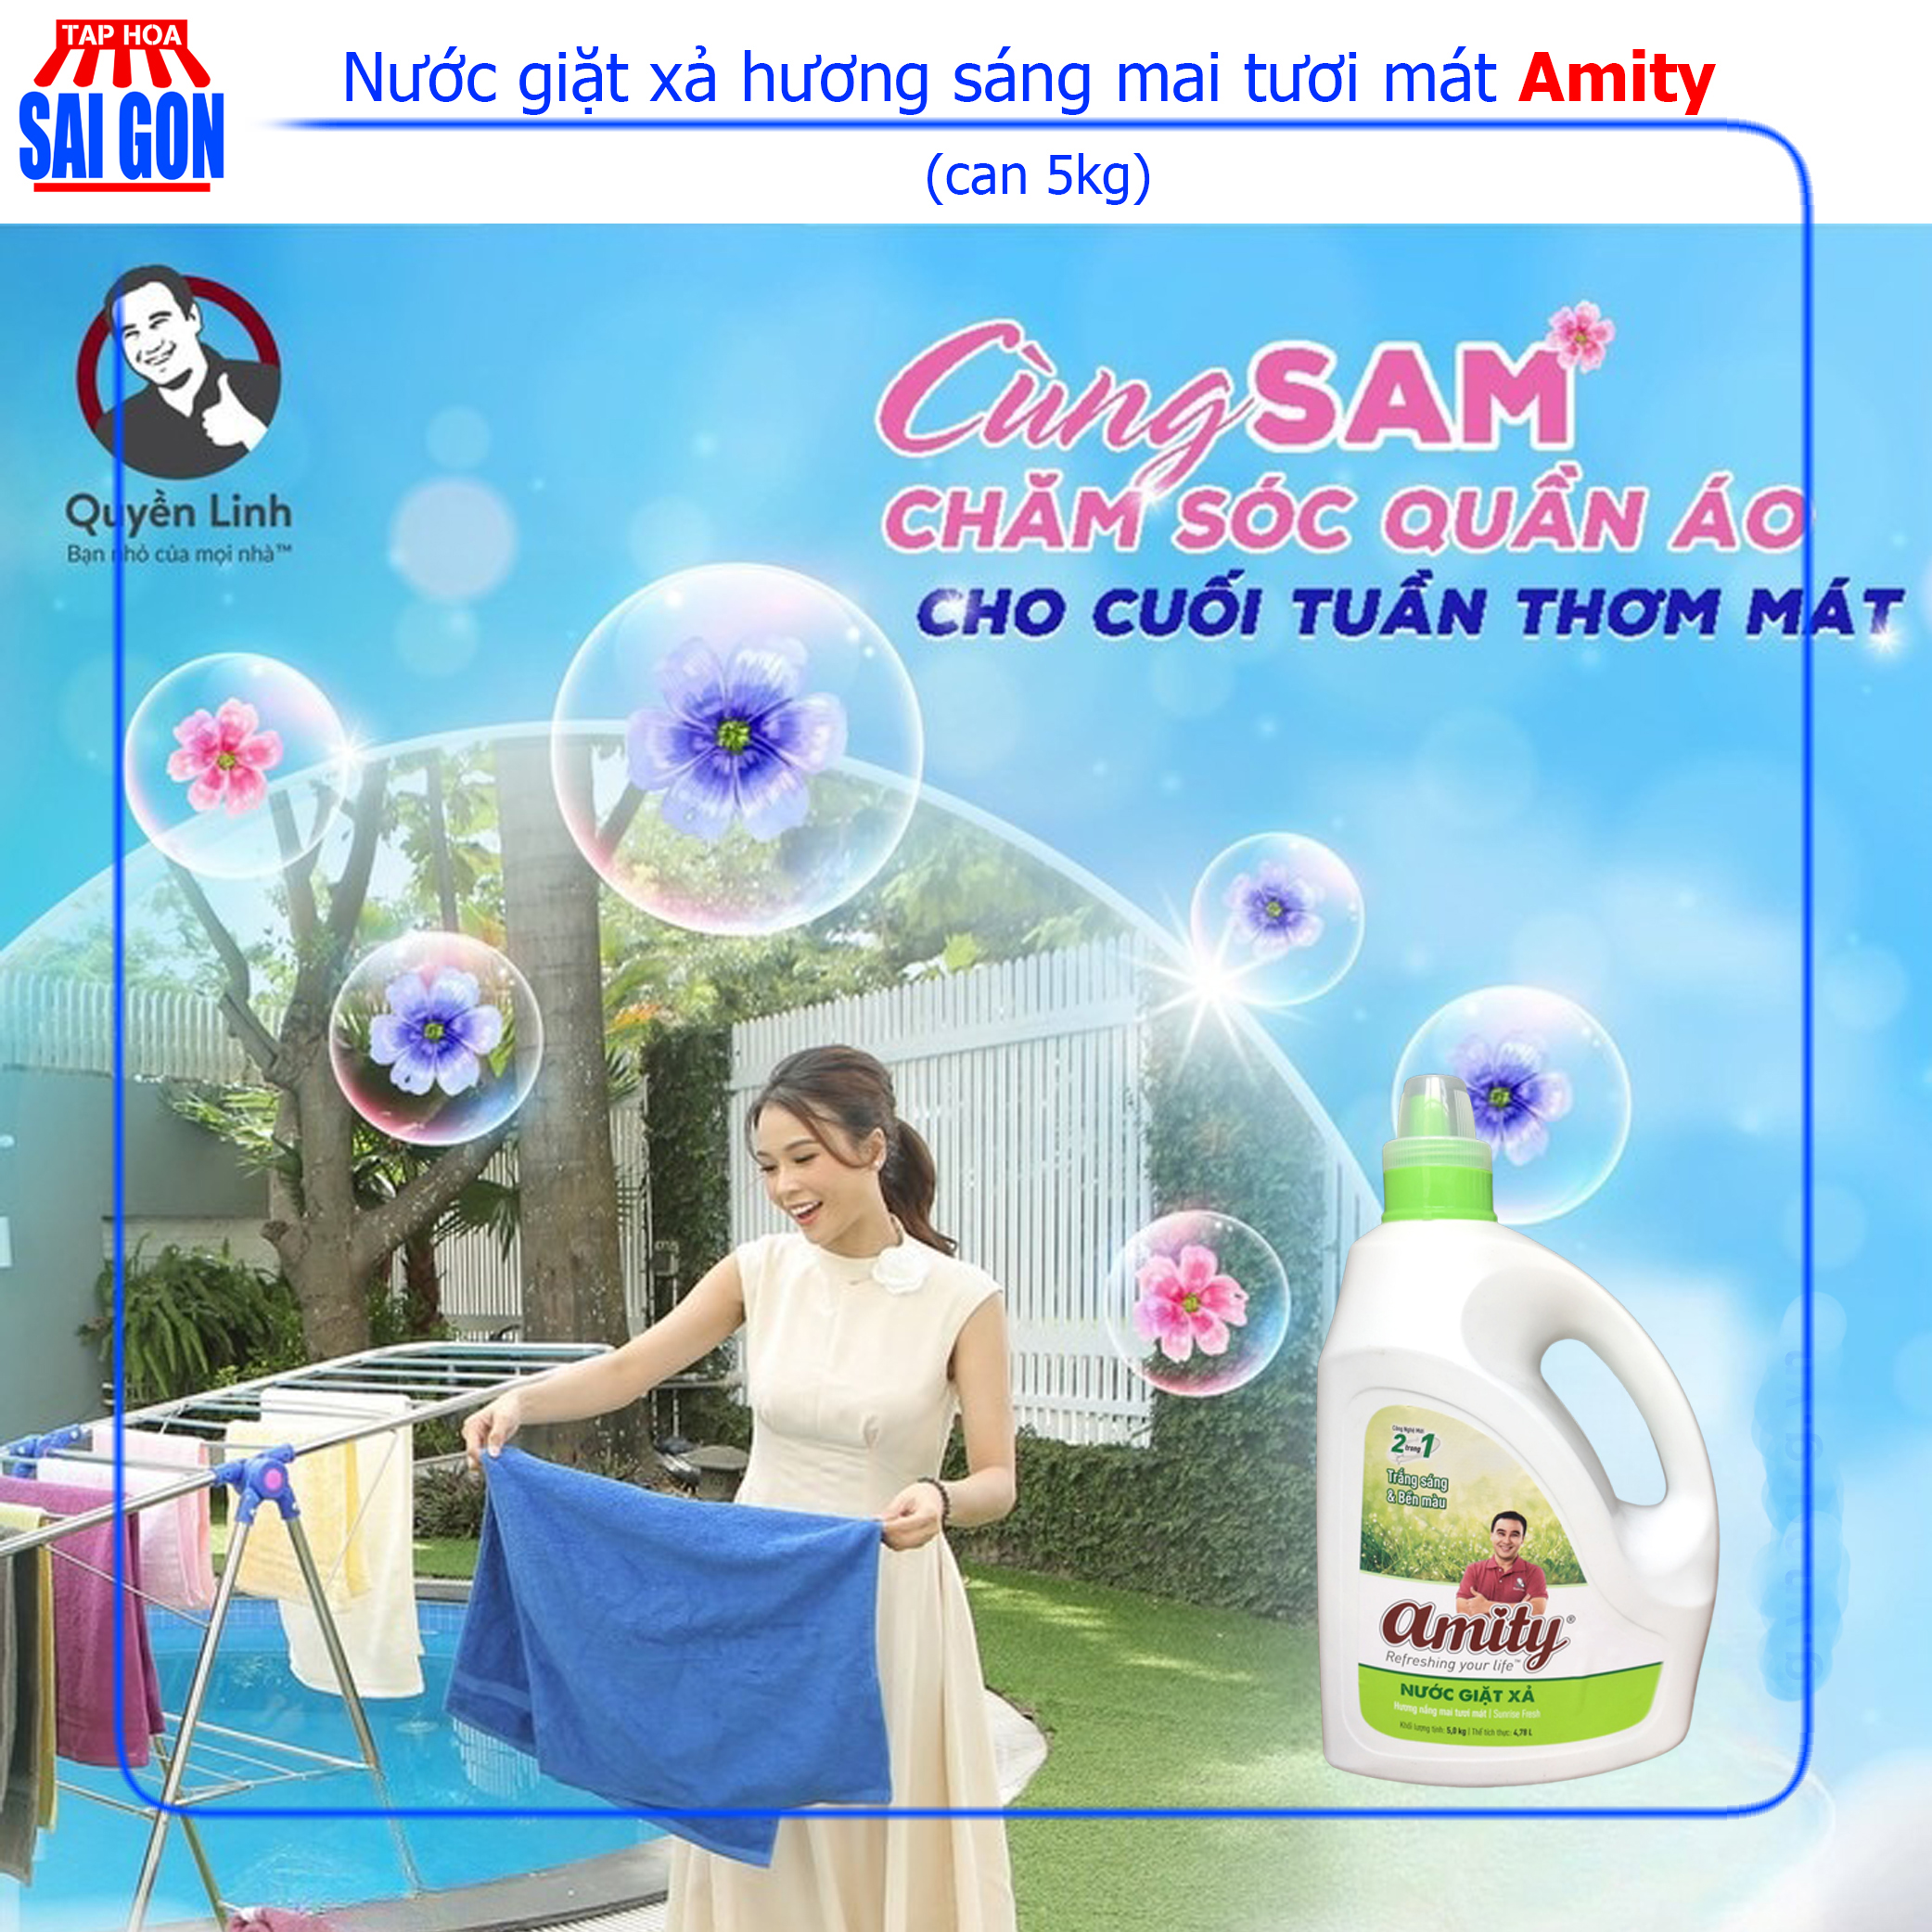 Nước giặt xả Amity nắng mai tươi mới (xanh lá) can 5kg loại bỏ mọi vết bẩn cho quần áo của gia đình